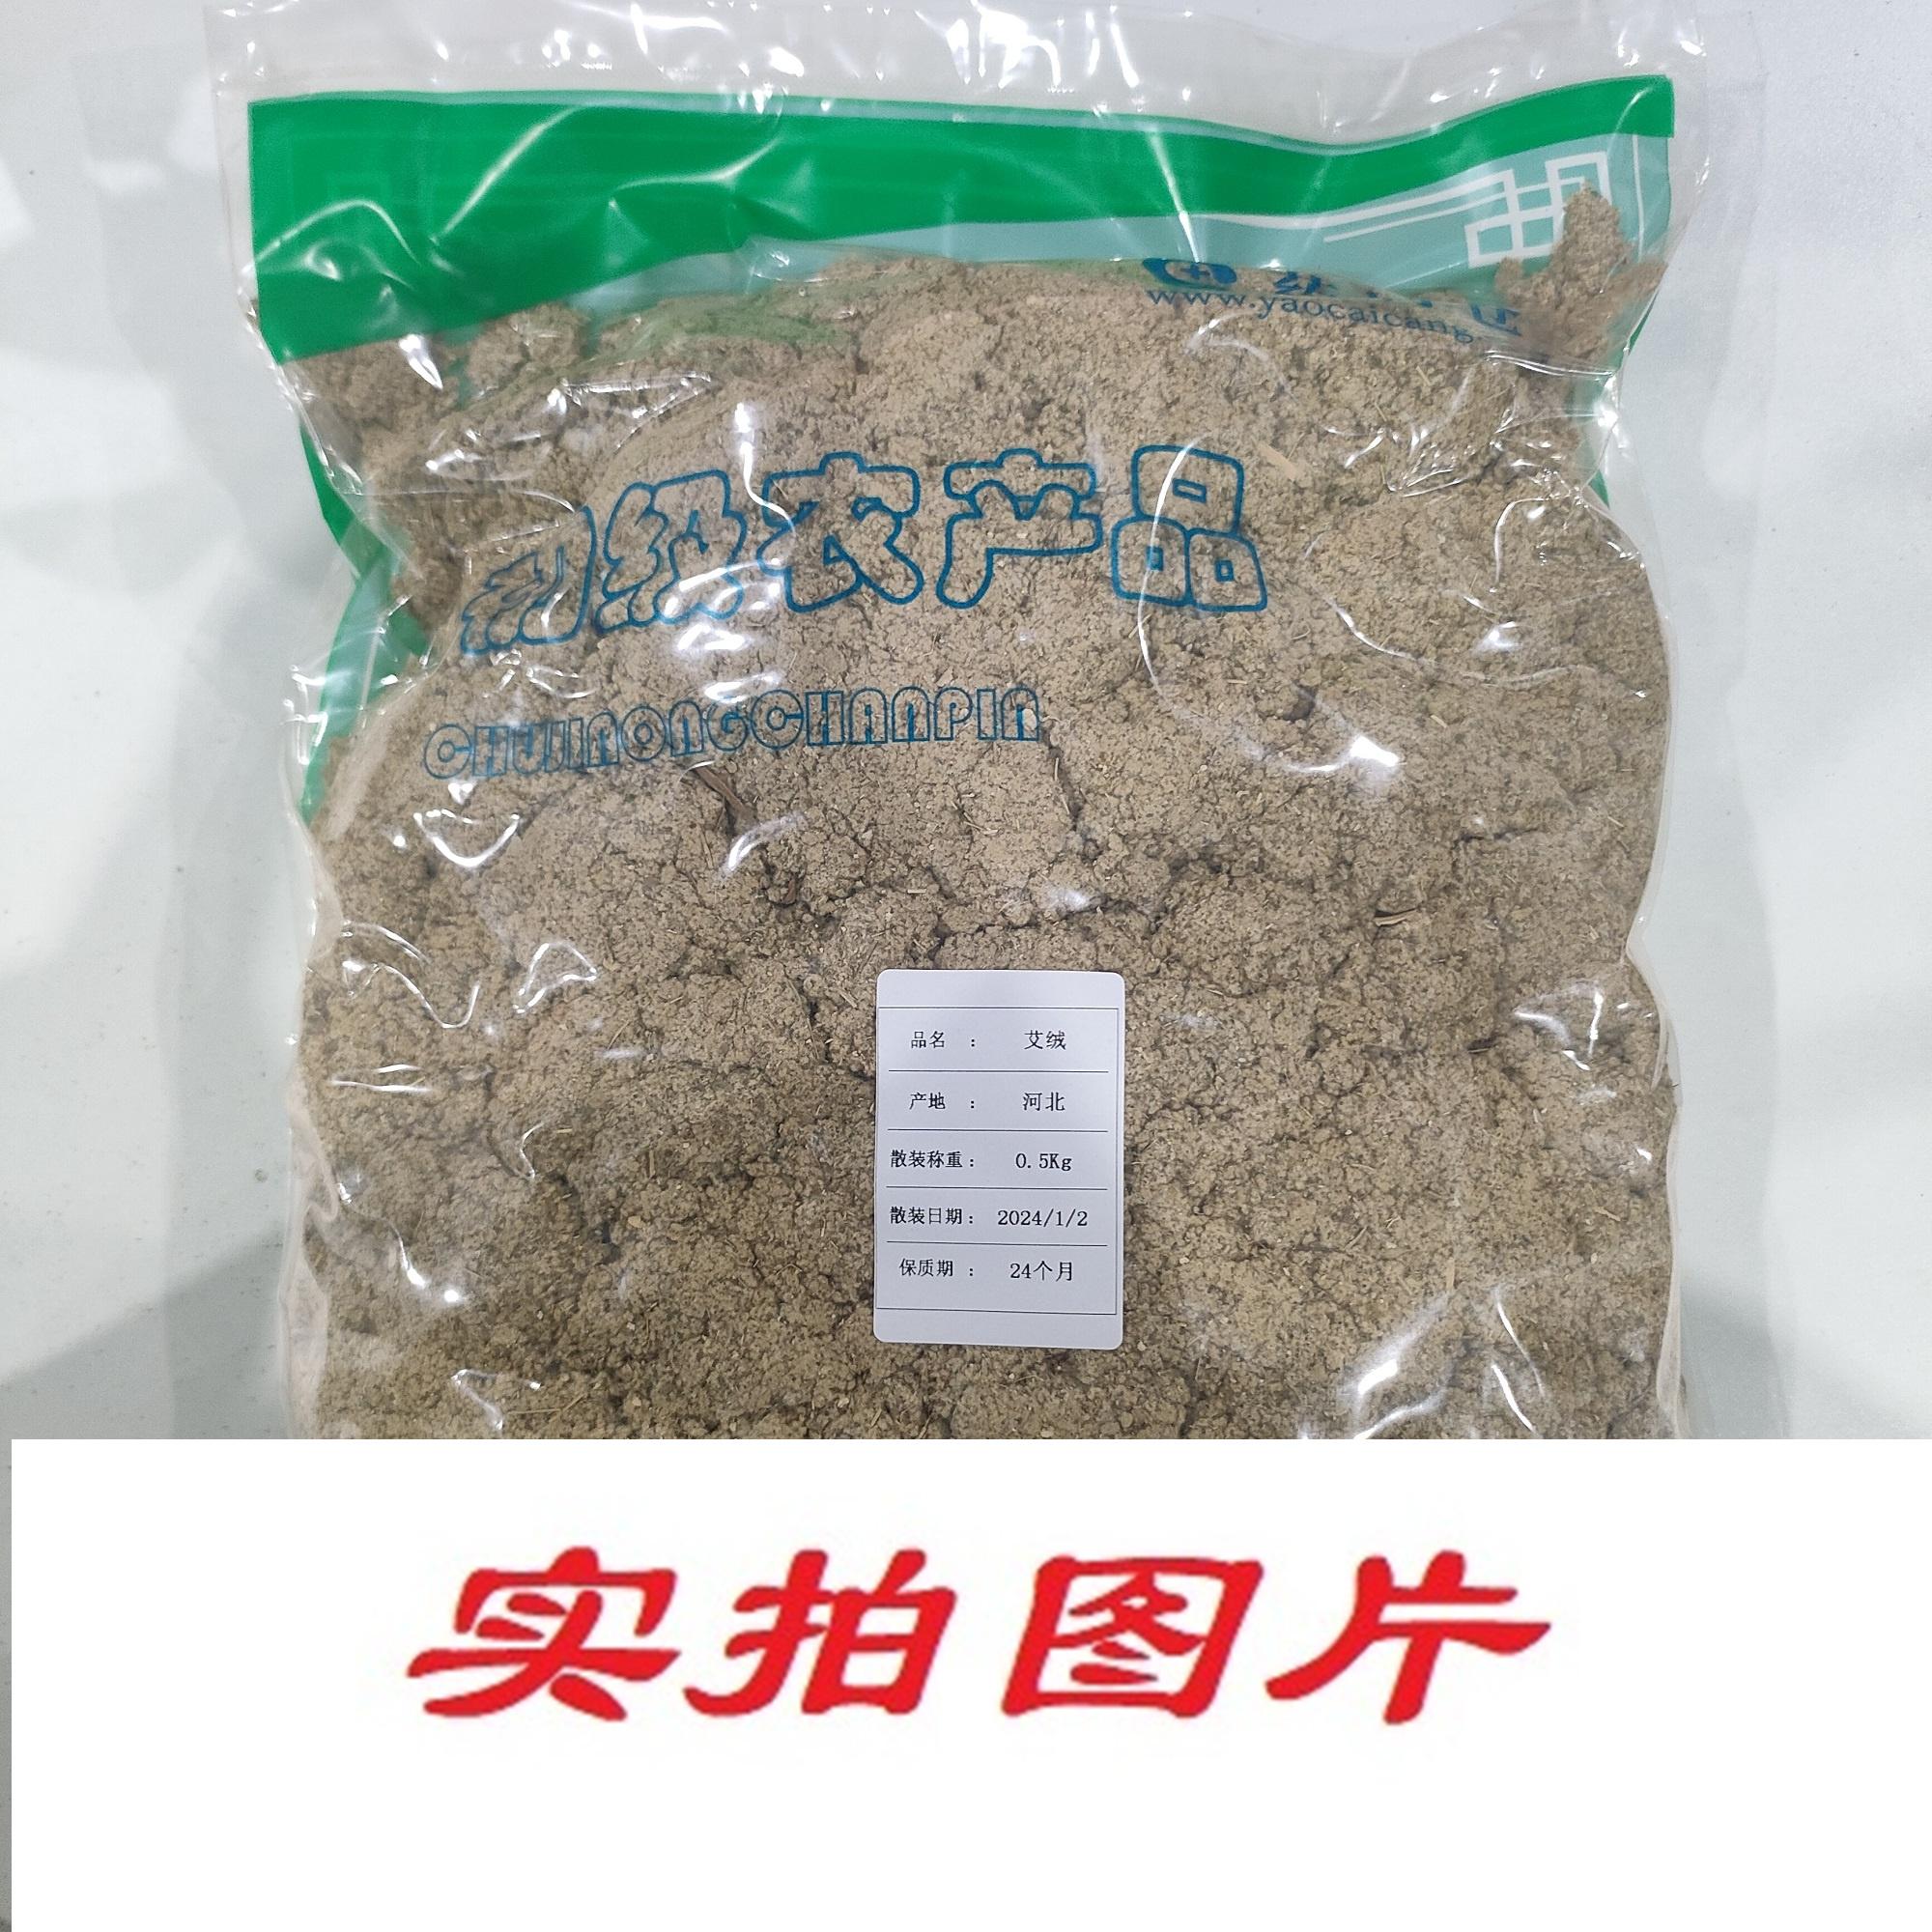 【】艾绒0.5kg-农副产品